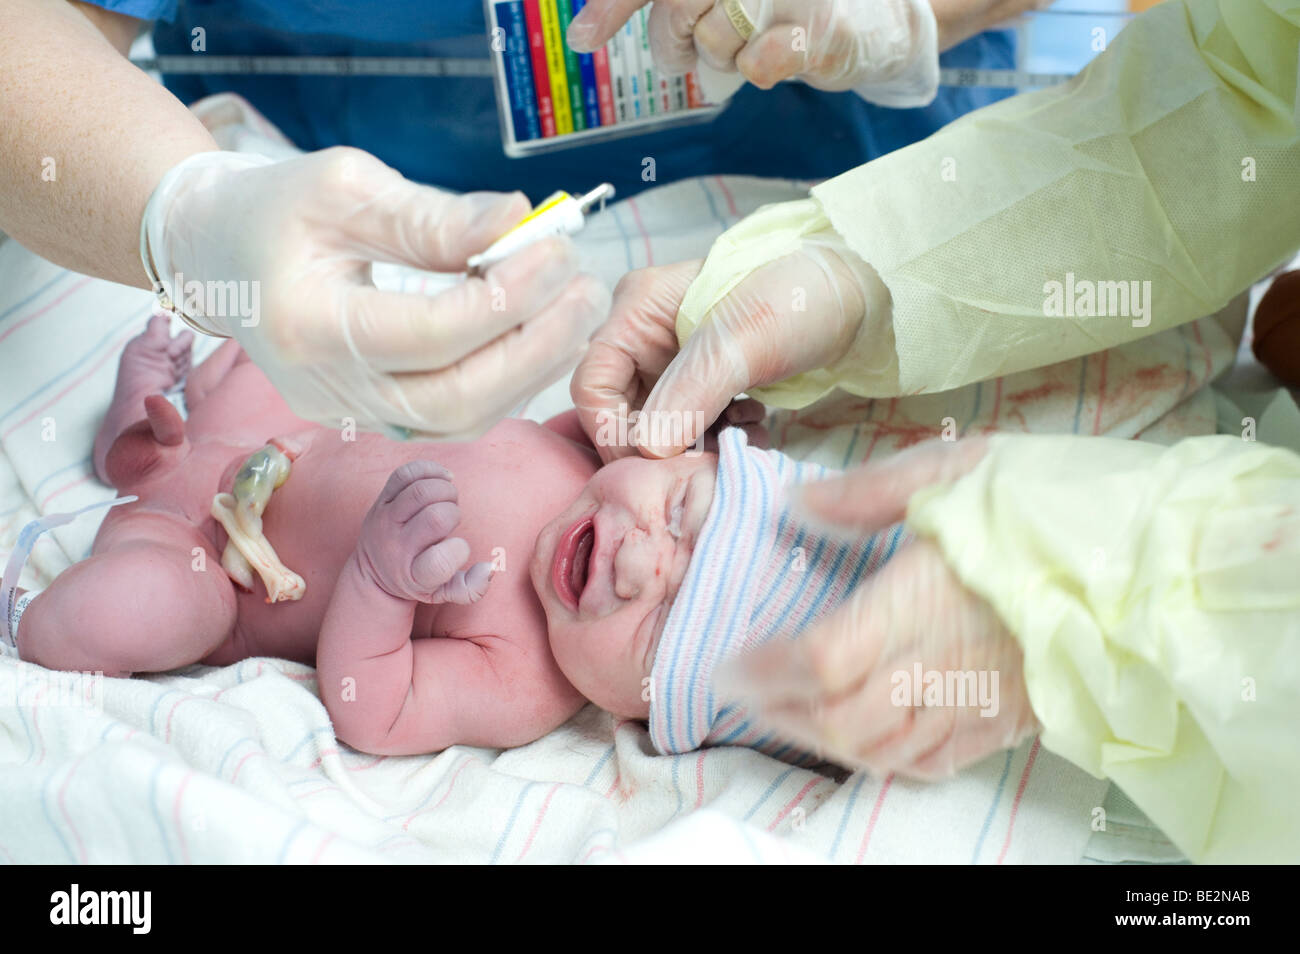 Hispanique du nouveau-né bébé reçoit les gouttes prophylactique immédiatement après la naissance pour prévenir l'infection. Modèle bébé est libéré. Banque D'Images